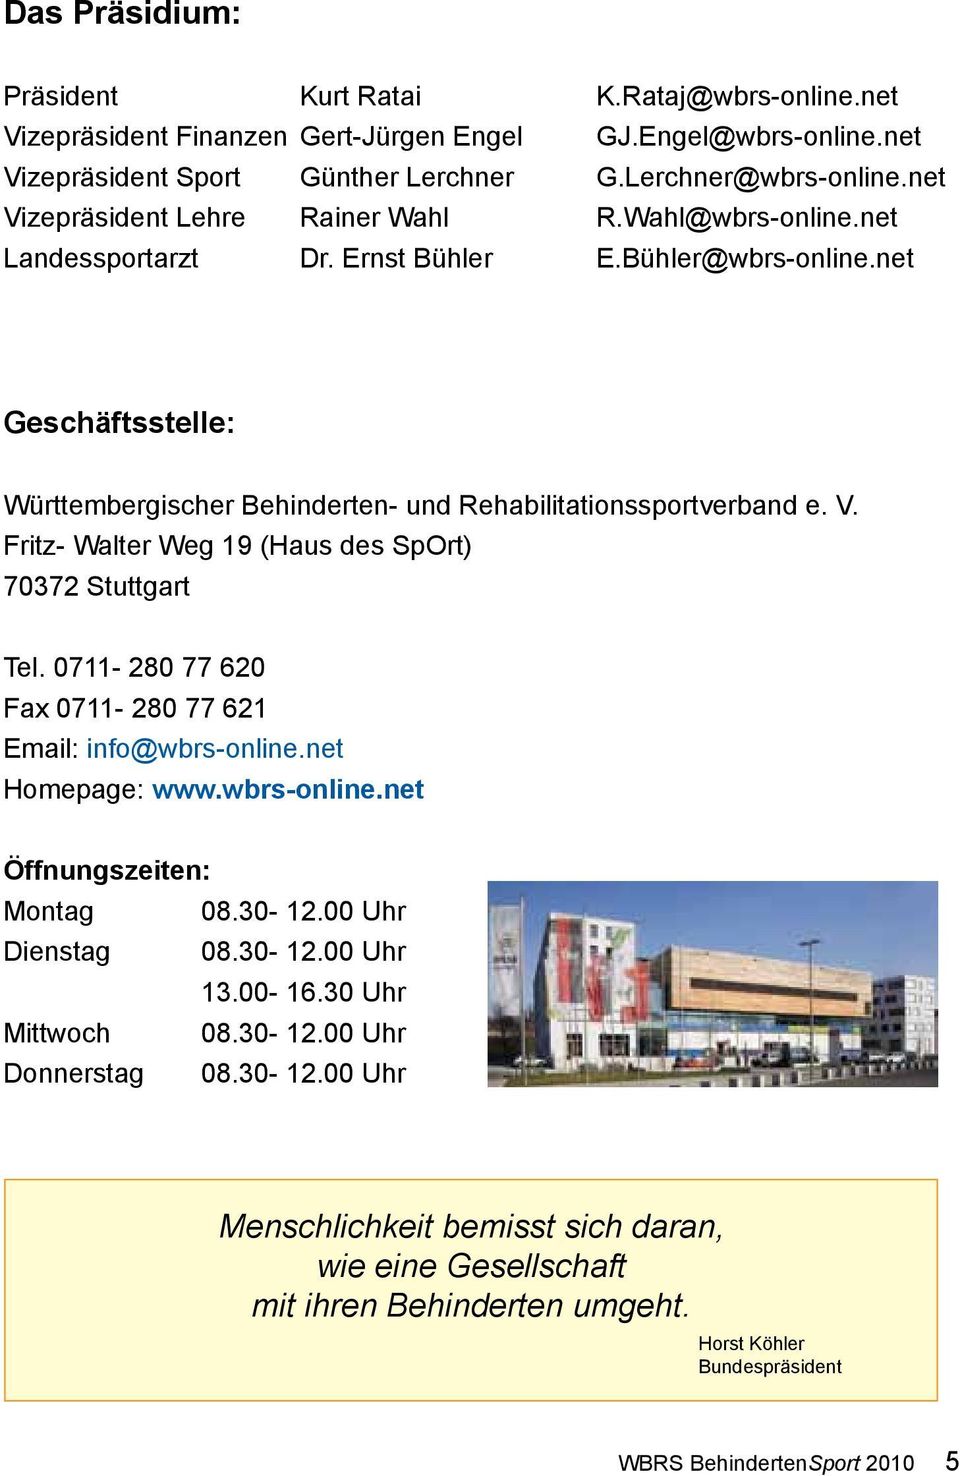 V. Fritz- Walter Weg 19 (Haus des SpOrt) 70372 Stuttgart Tel. 0711-280 77 620 Fax 0711-280 77 621 Email: info@wbrs-online.net Homepage: www.wbrs-online.net Öffnungszeiten: Montag 08.30-12.